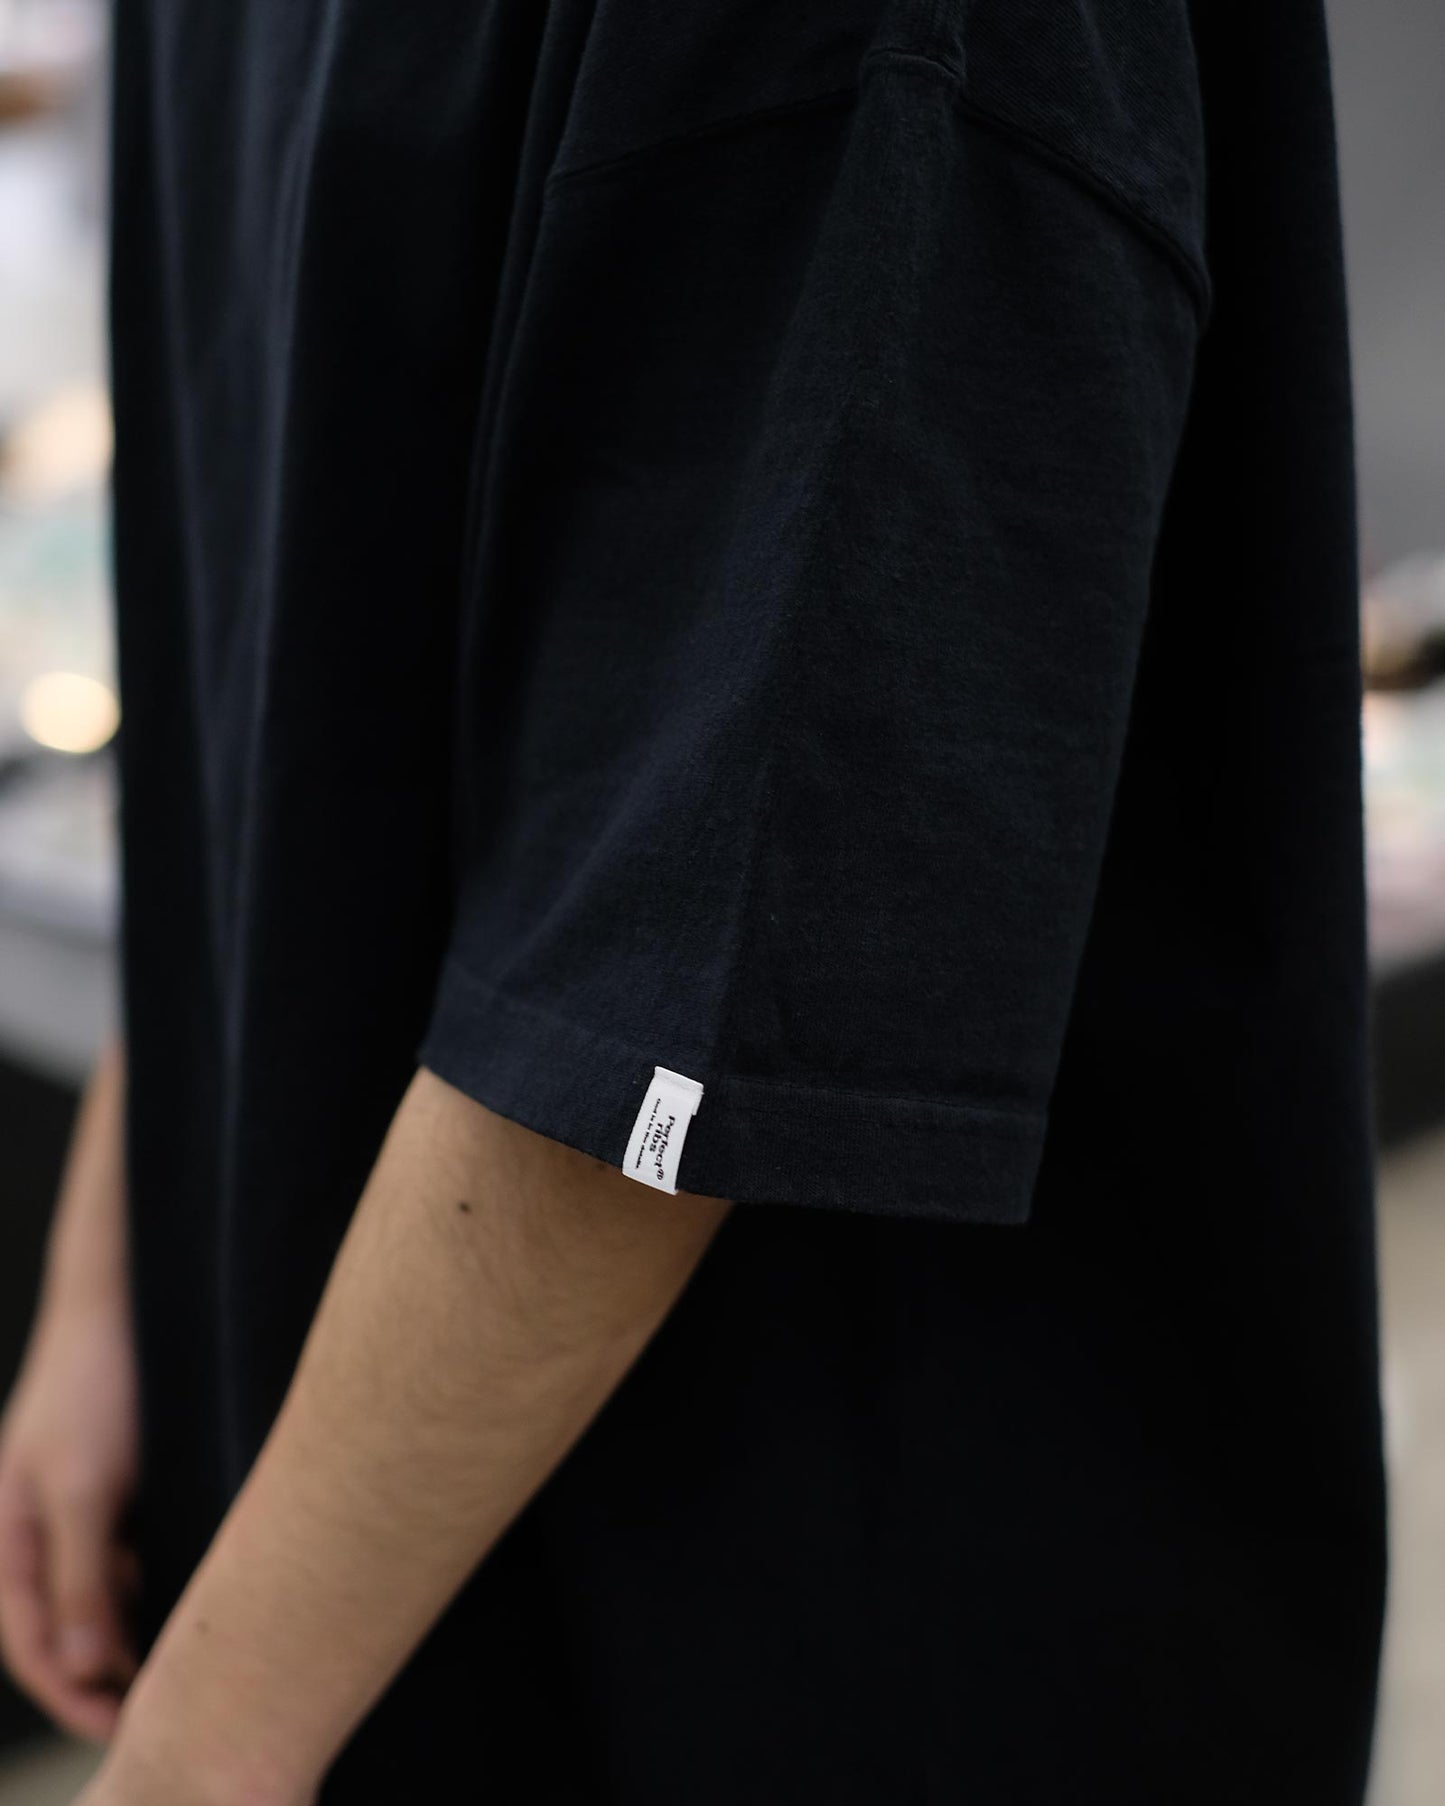 パーフェクトリブス/Basic Short Sleeve T Shirts/Tシャツ/Black